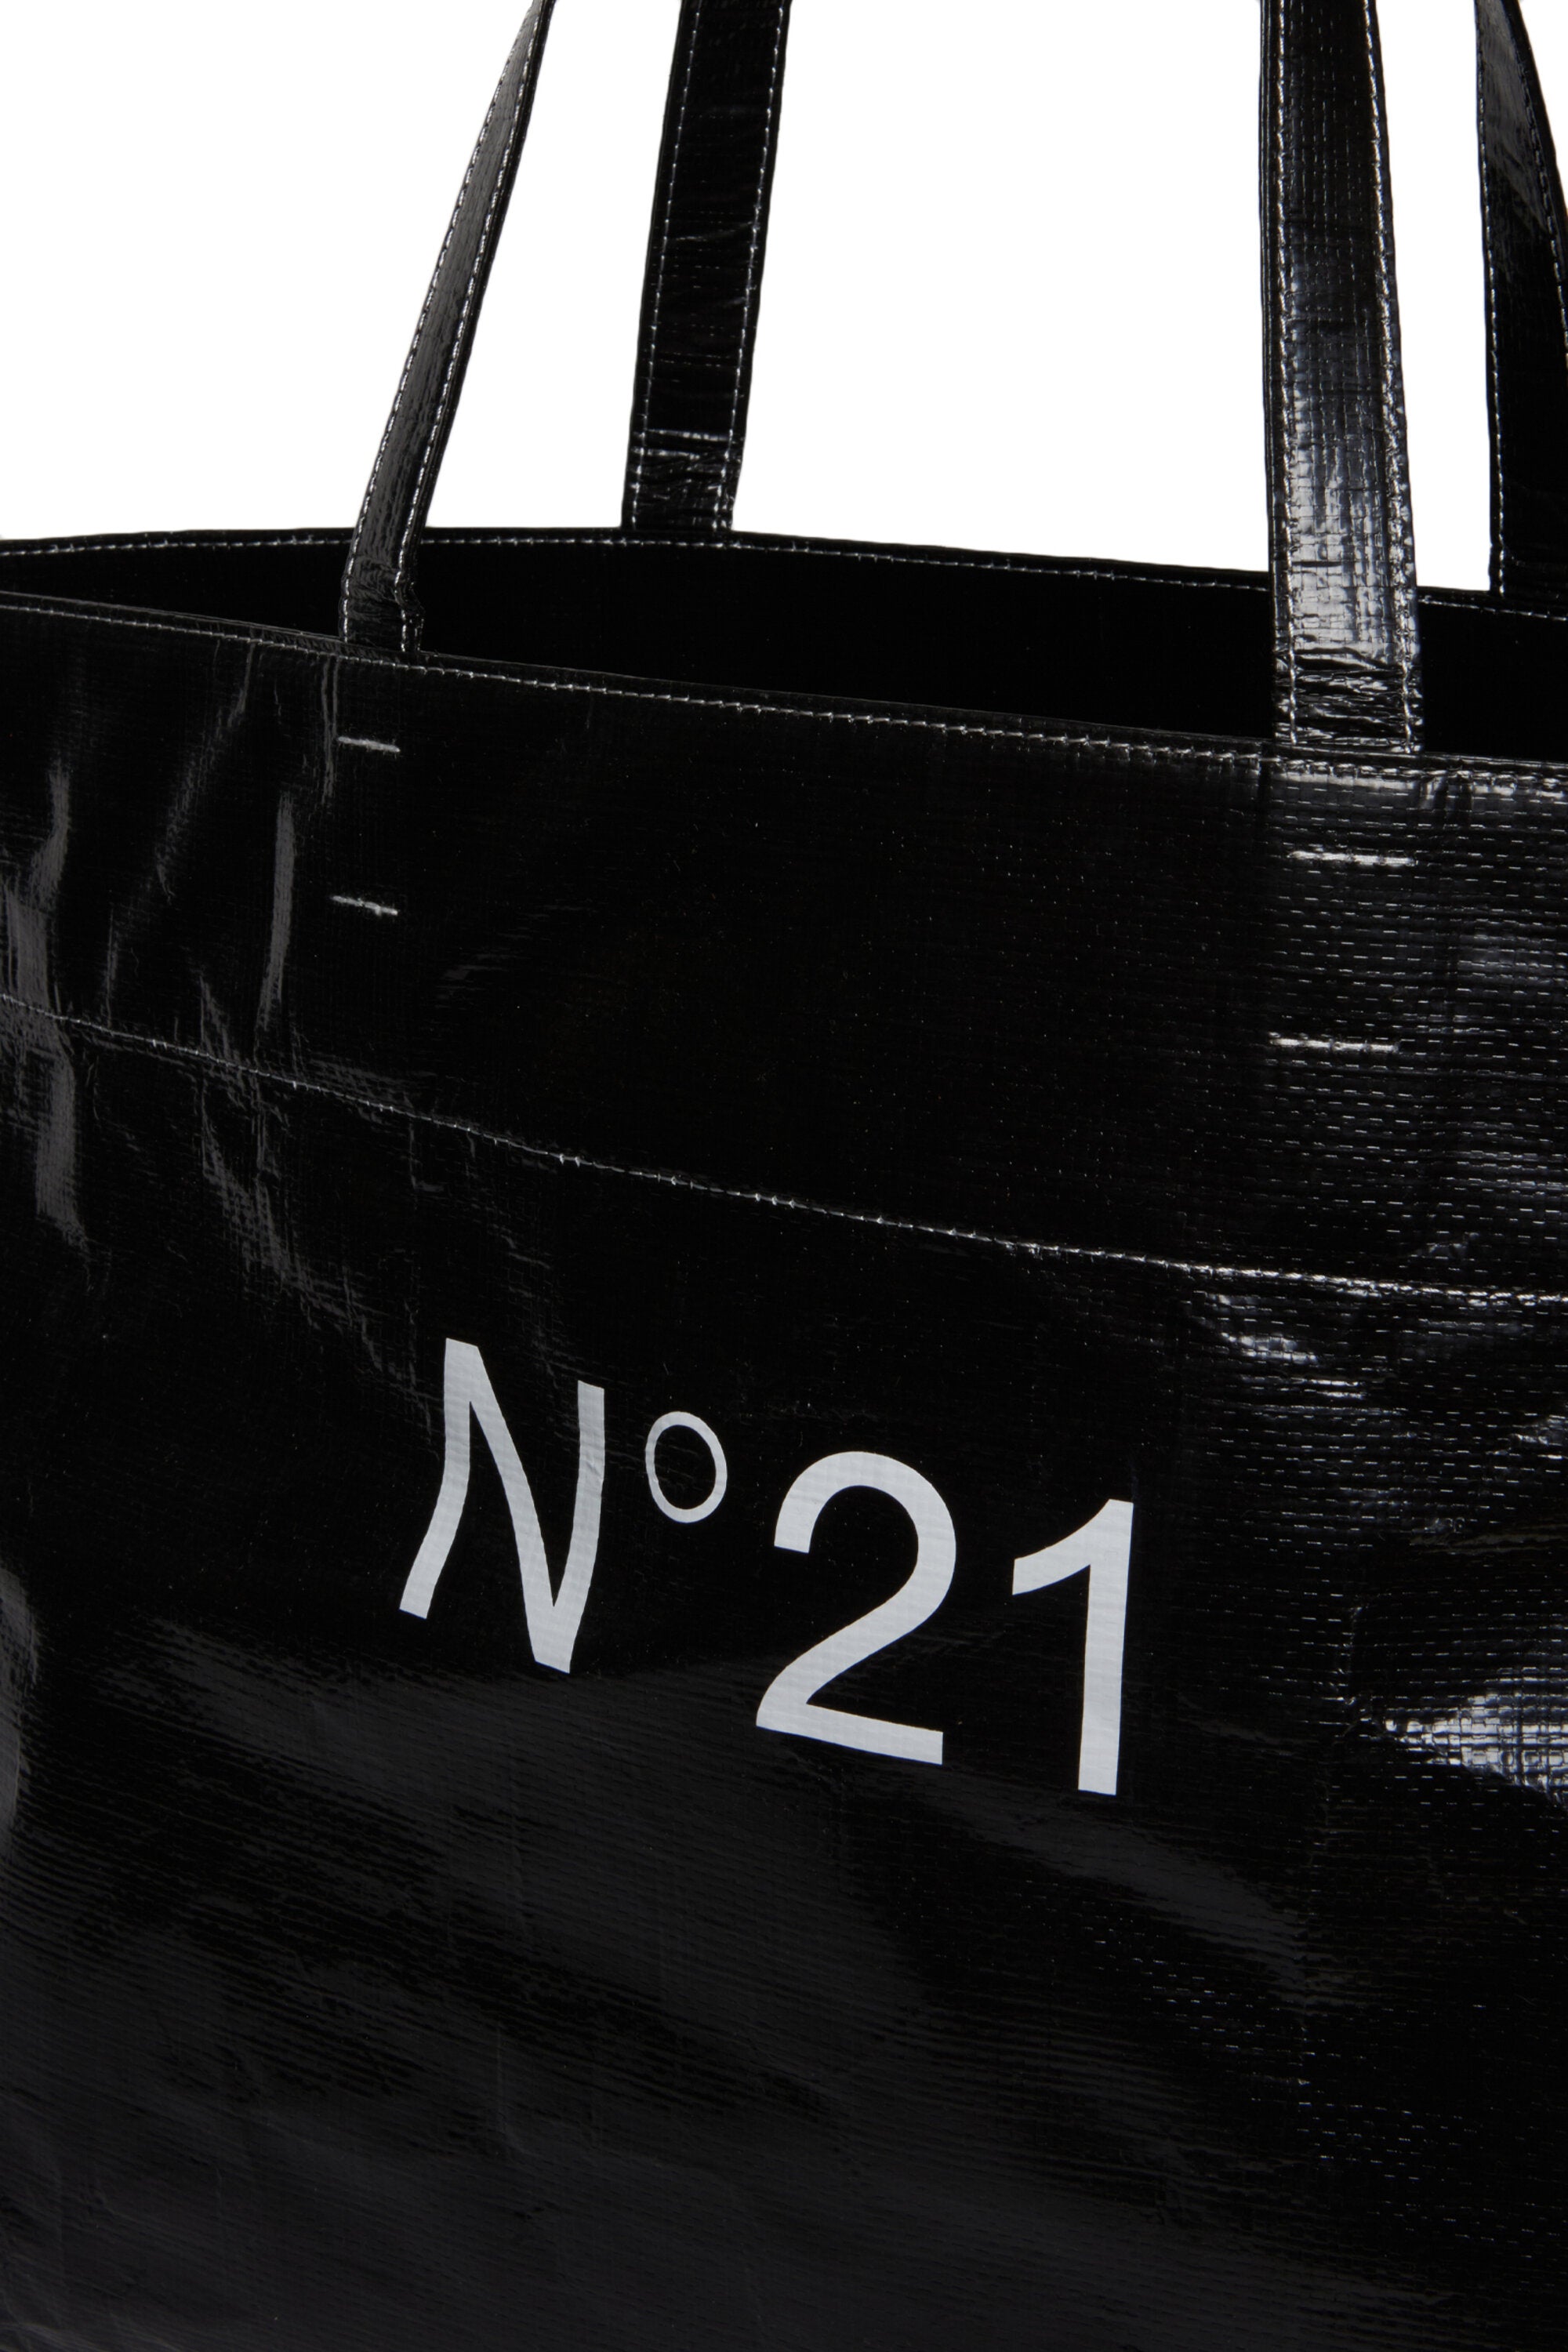 N°21ロゴをあしらったショッパーバッグ